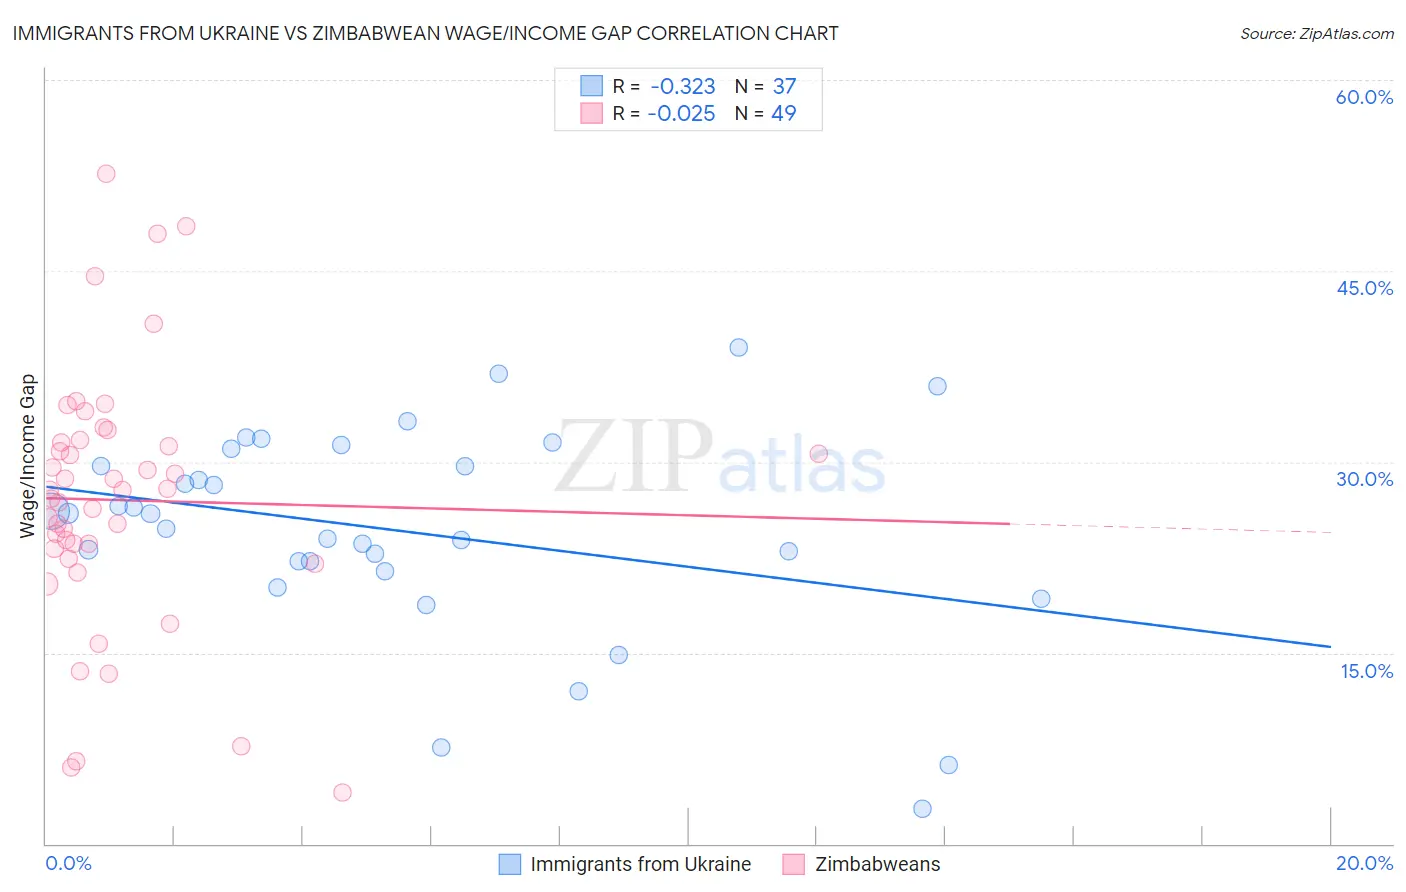 Immigrants from Ukraine vs Zimbabwean Wage/Income Gap